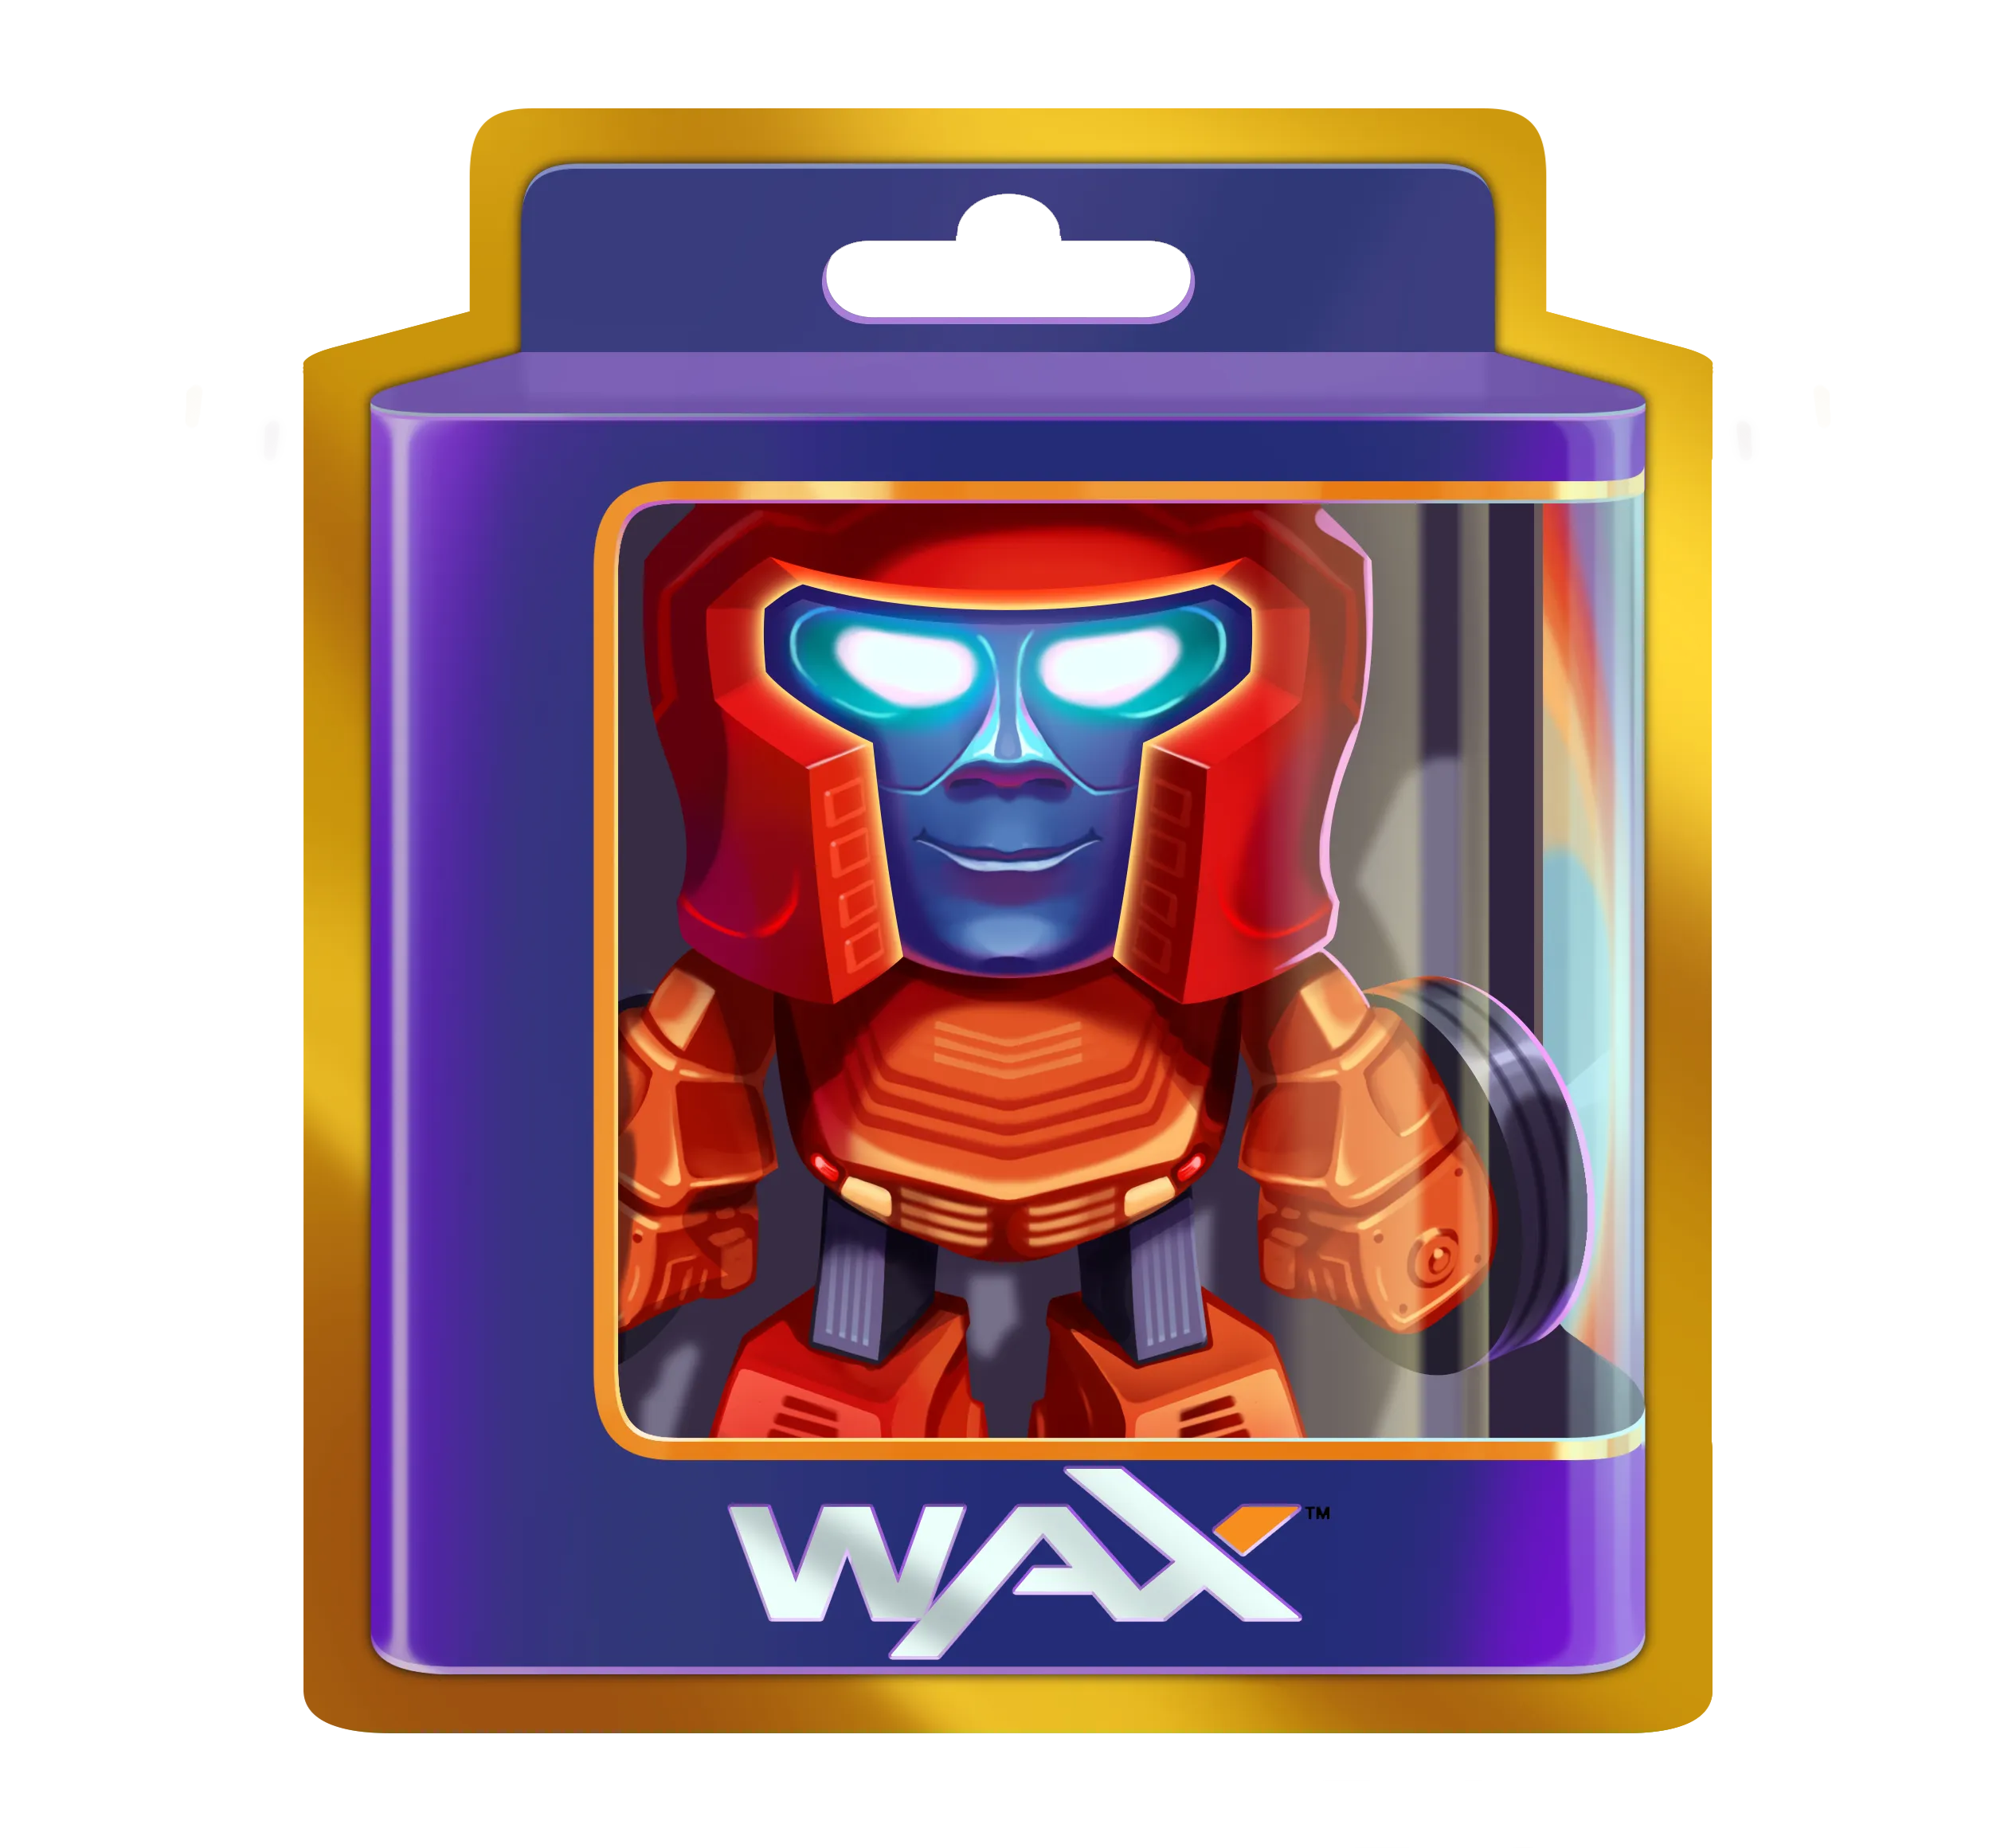 WAX digital toy in a box.